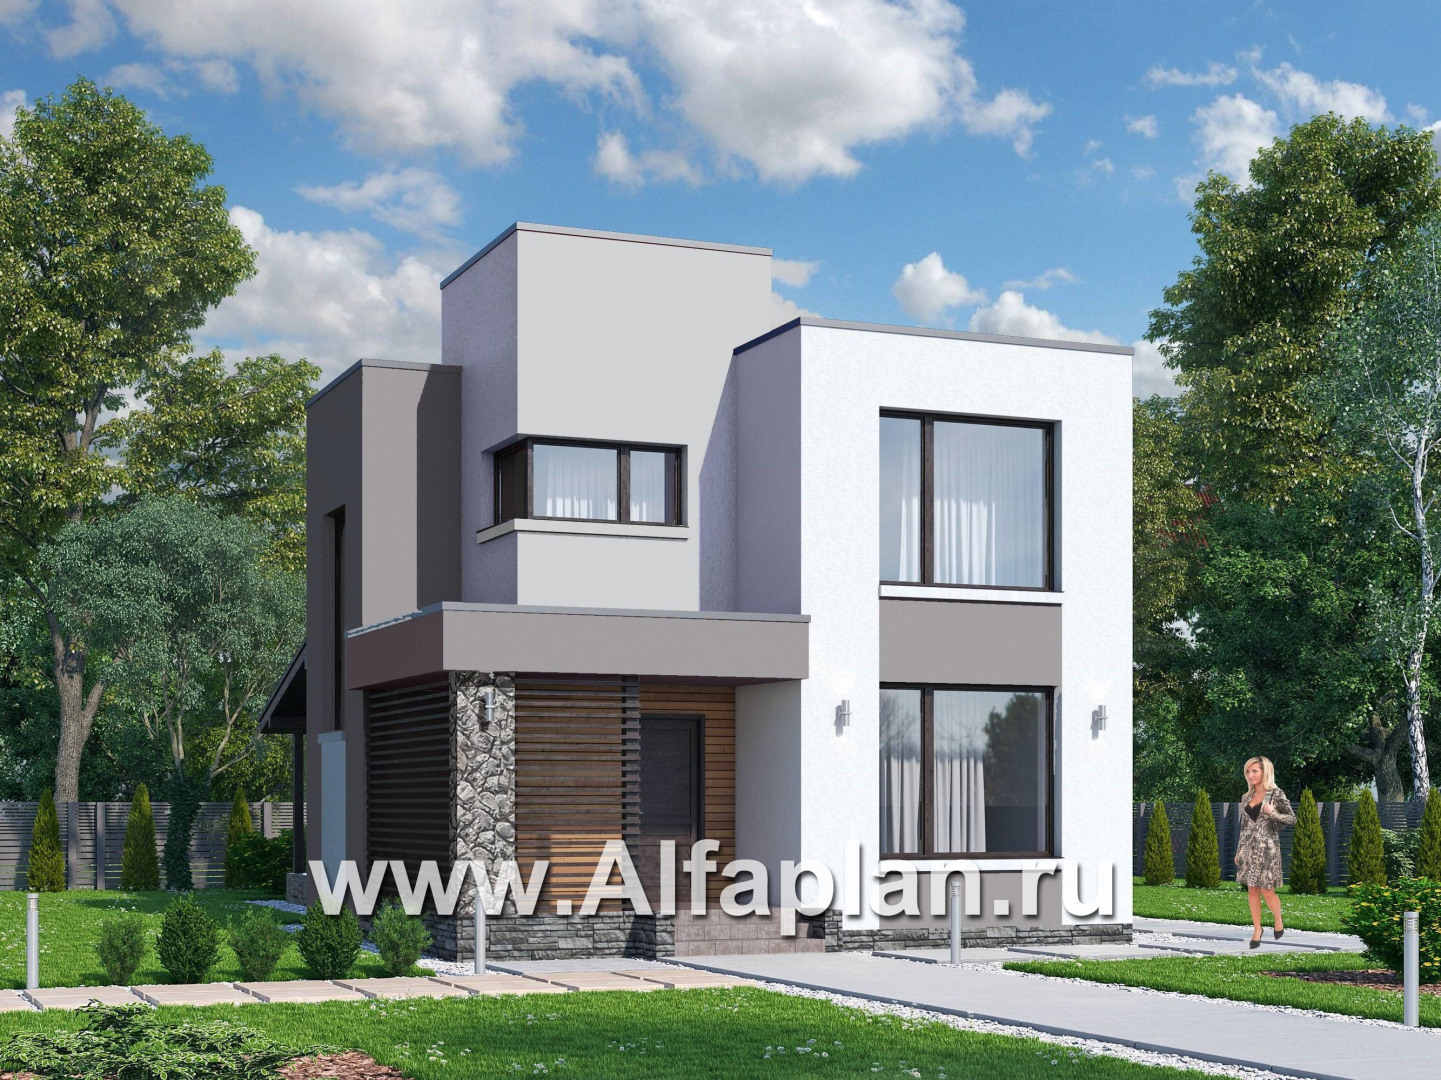 Проекты домов Альфаплан - «Арс» - дом с плоской кровлей для узкого участка - дополнительное изображение №1